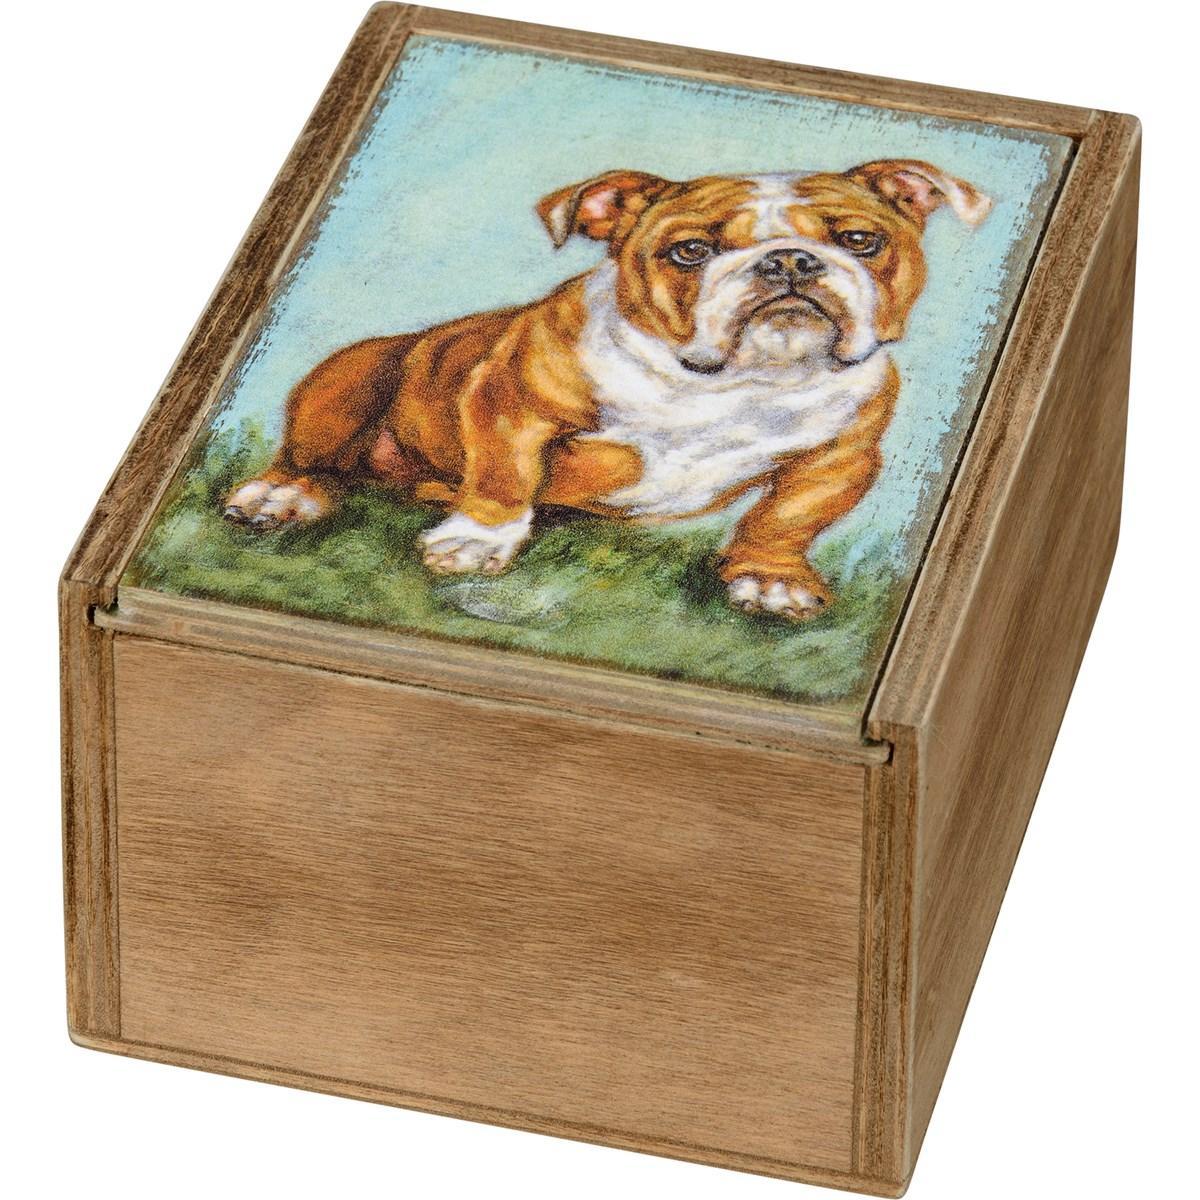 I Love My Bulldog Keepsake Box